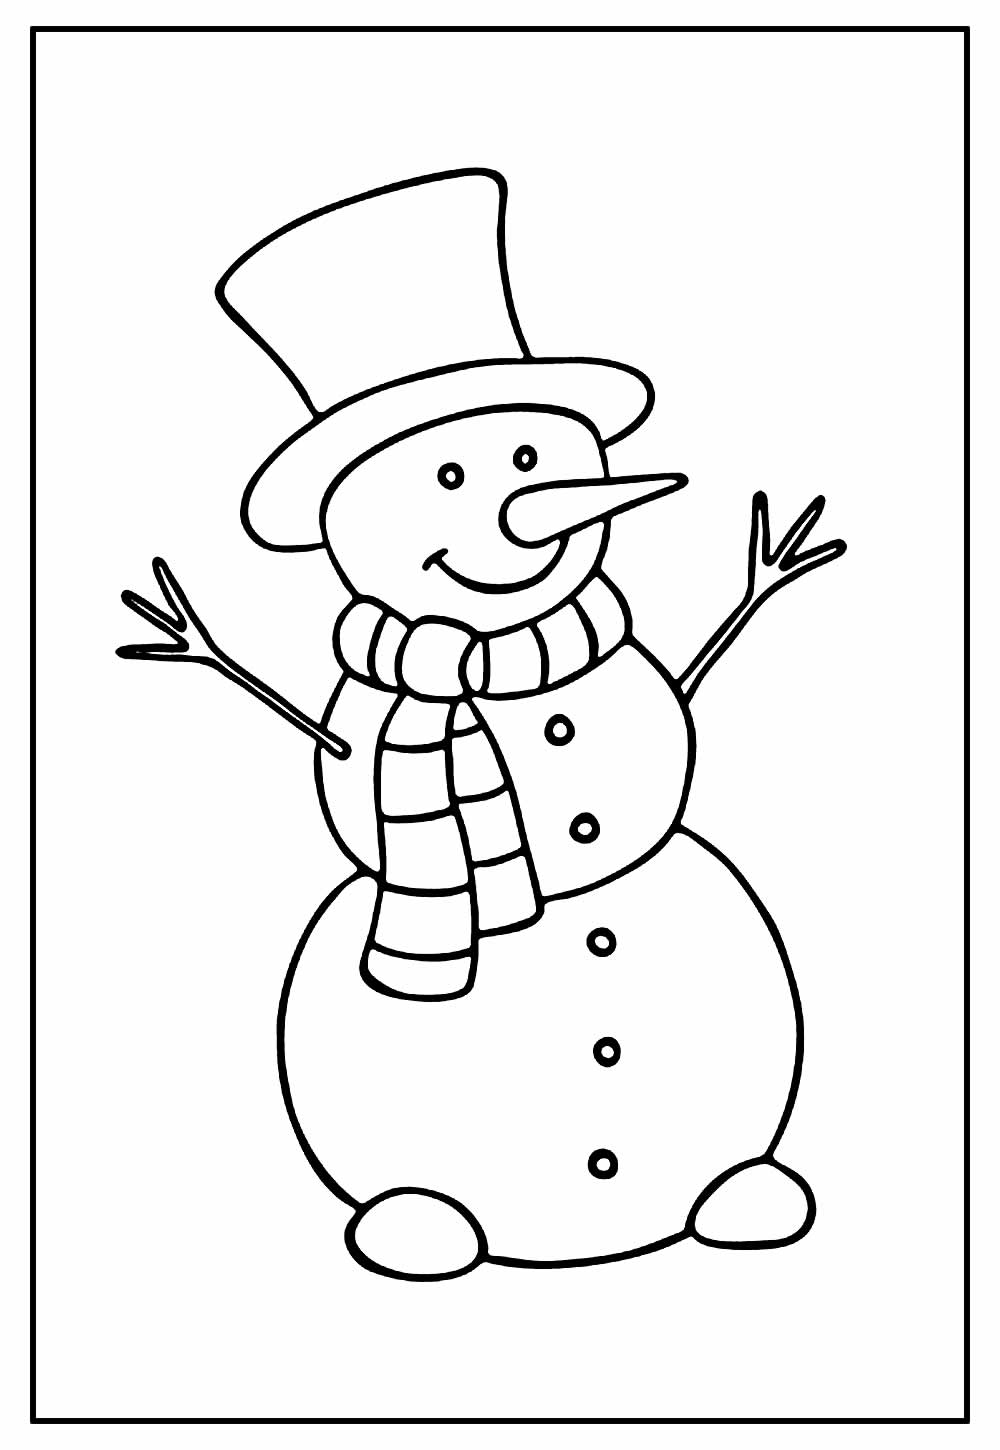 Desenhos de Bonecos de Neve para Imprimir e Colorir